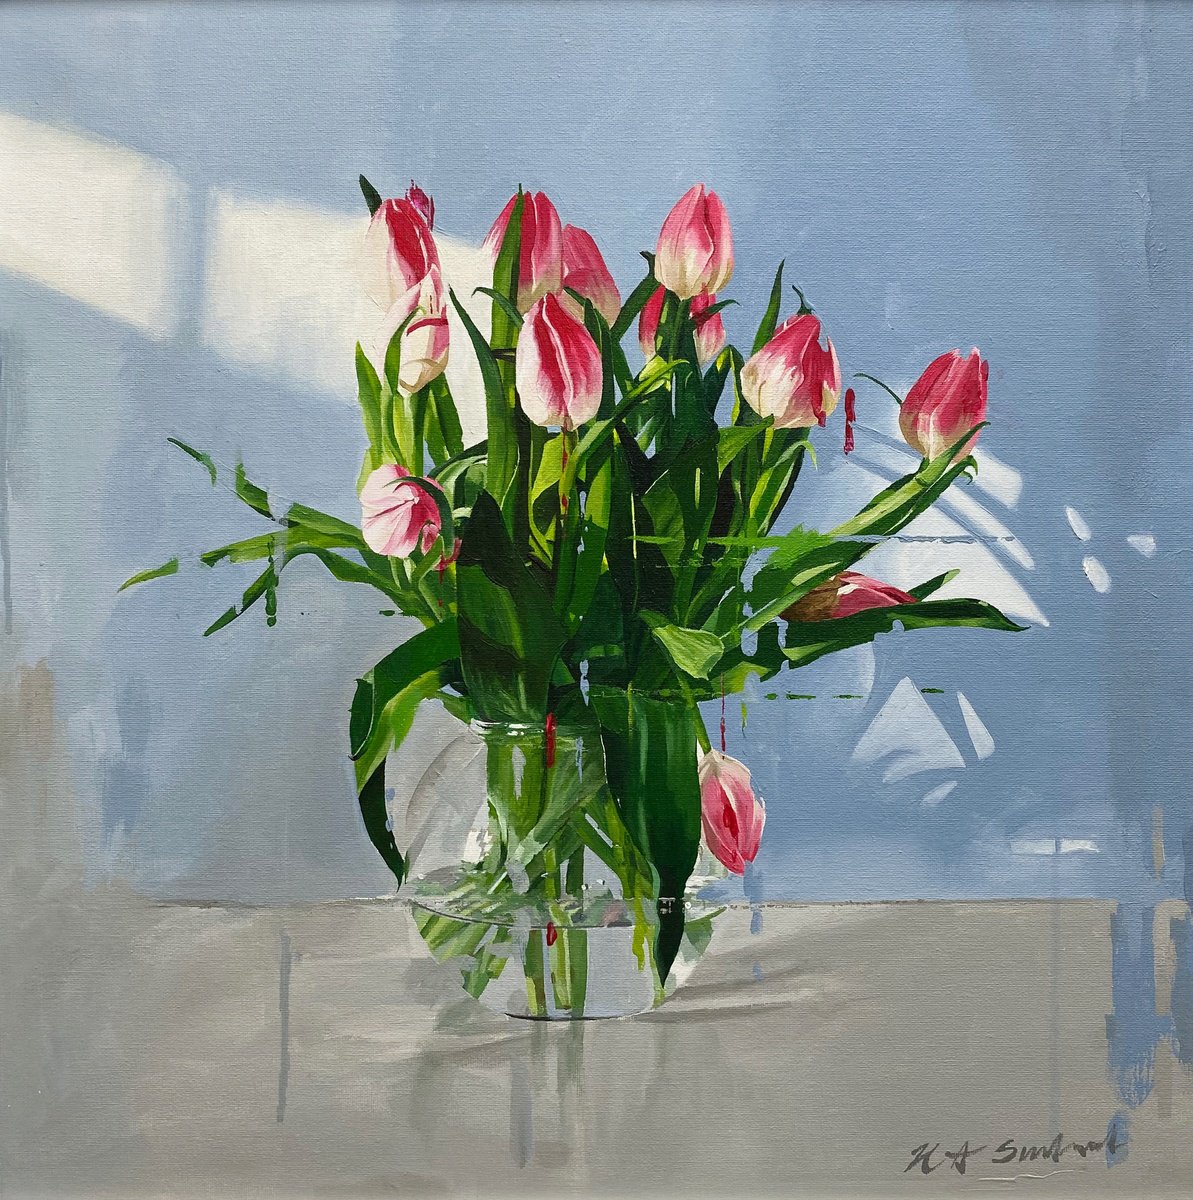 Tulips in glass vase by Helen Sinfield